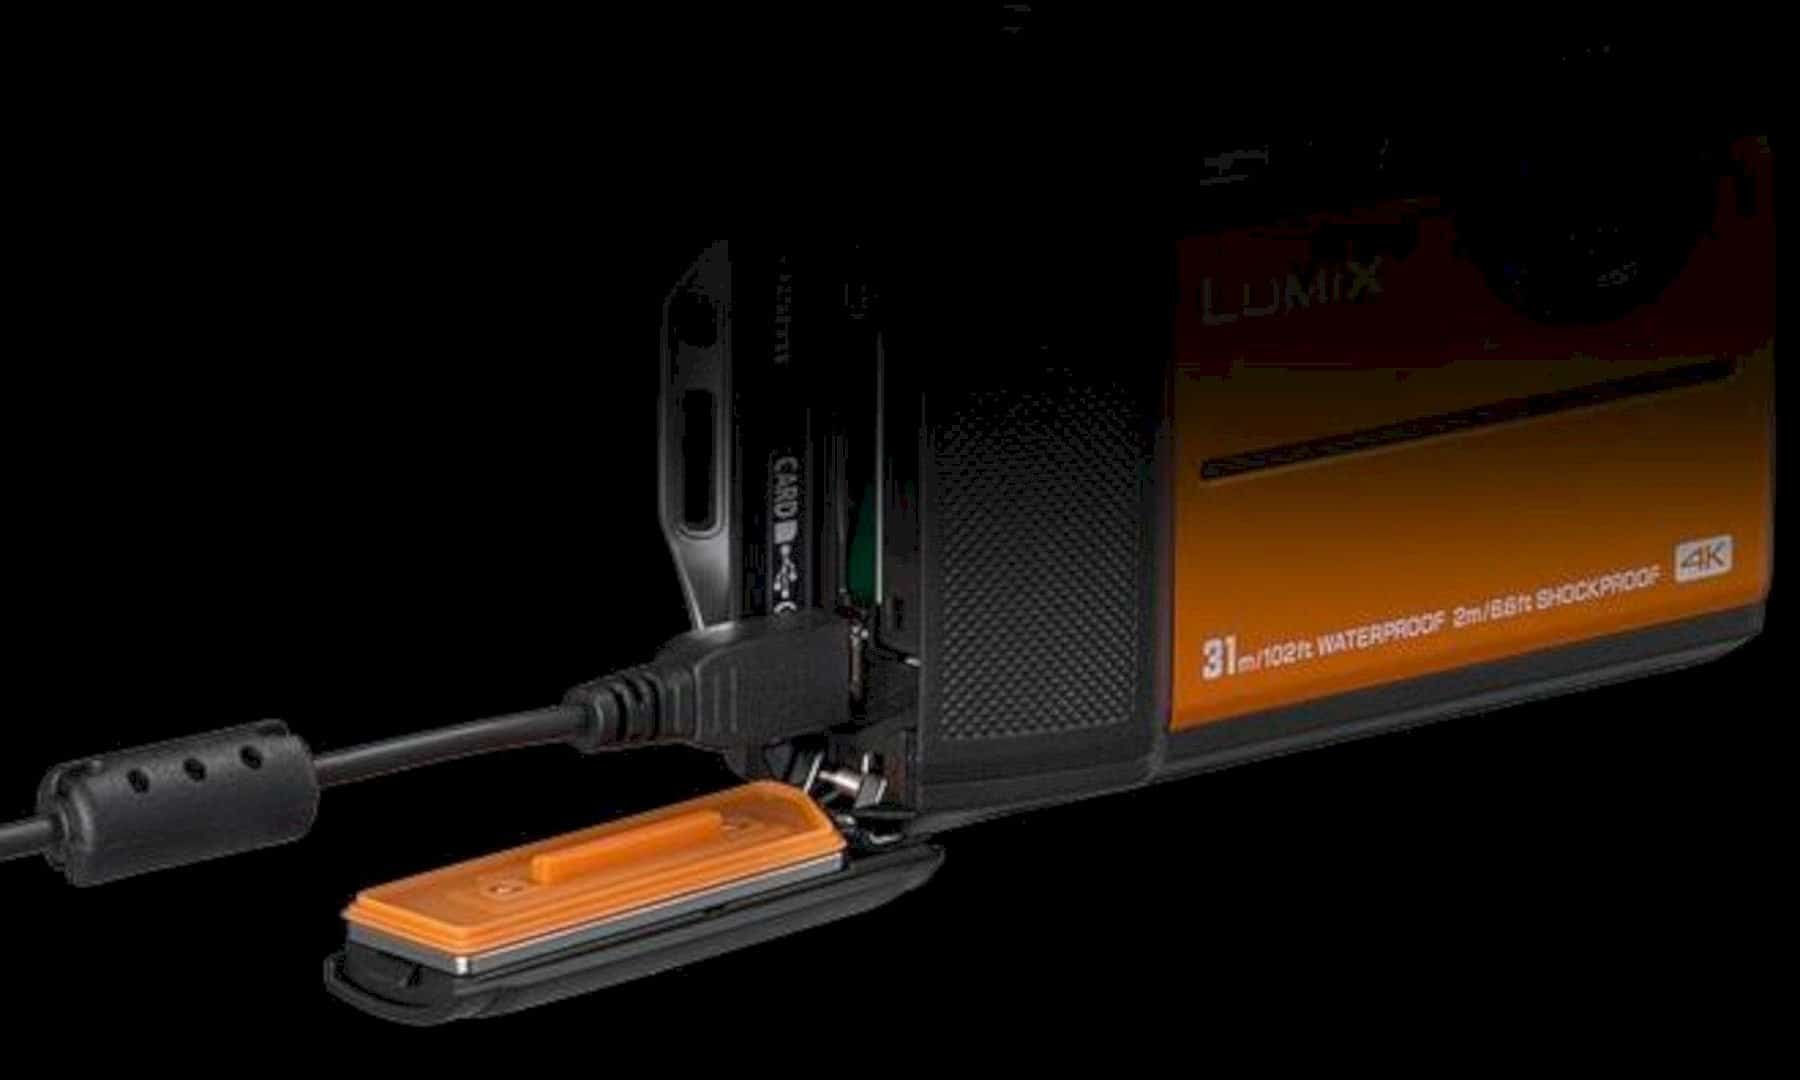 Panasonic LUMIX TS7 Waterproof Tough Camera 2